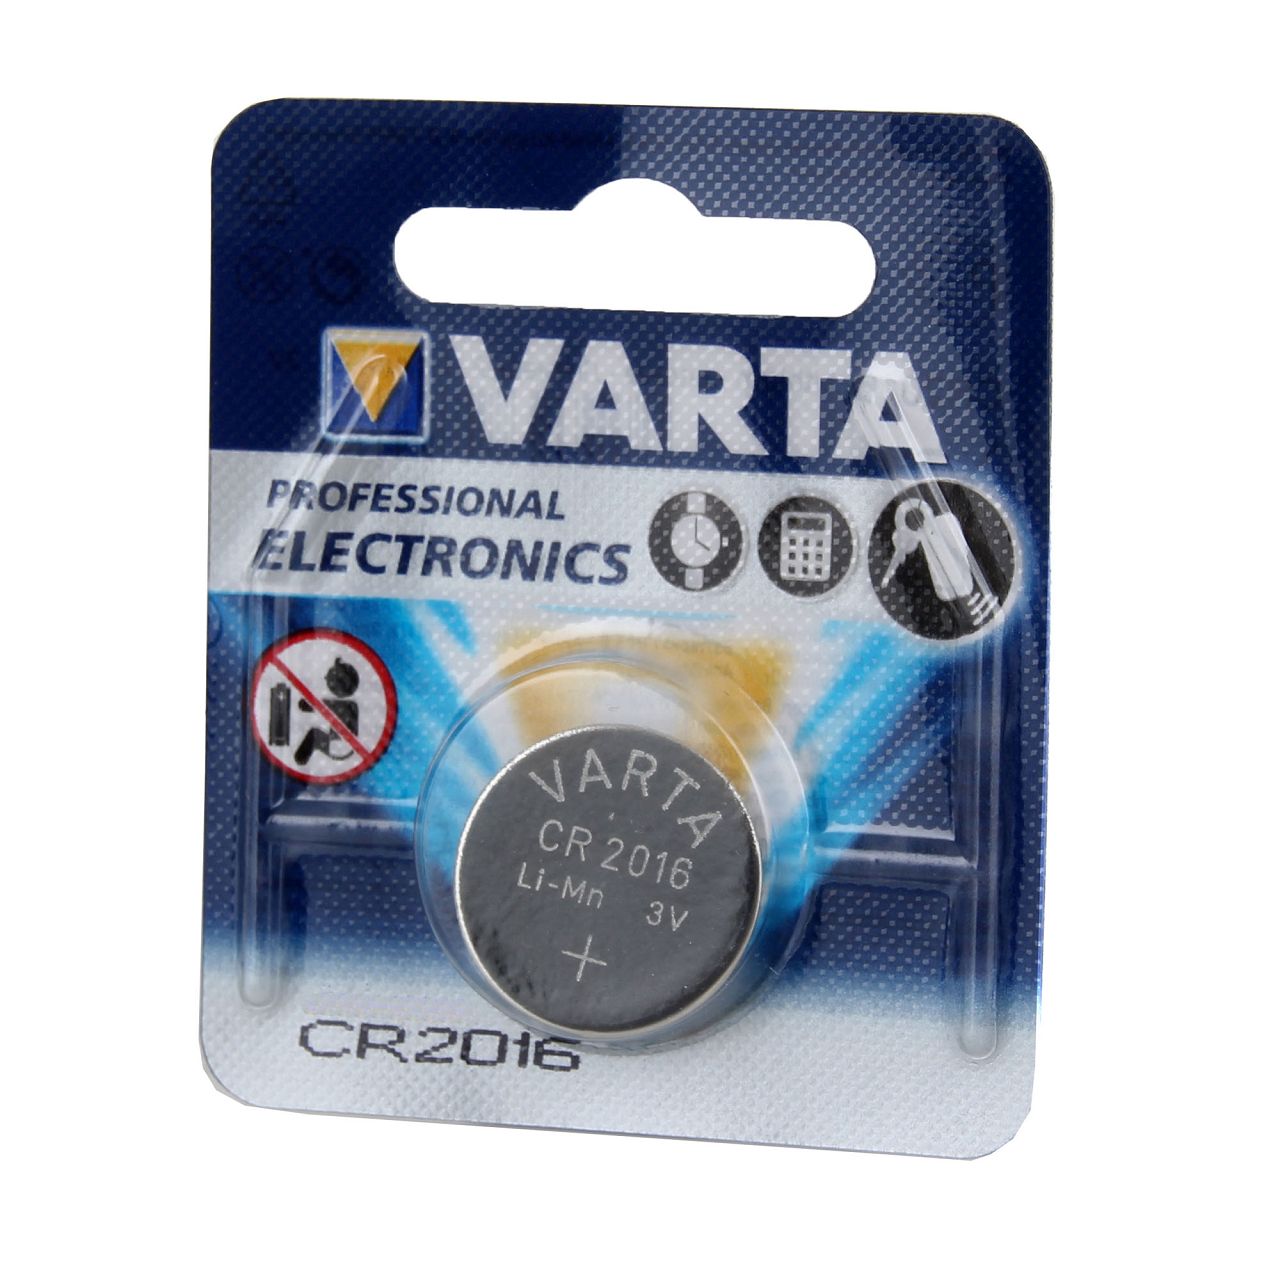 10x VARTA Lithium 3V CR2016 Knopfzelle Knopfbatterie Batterie (MHD 12.2031)